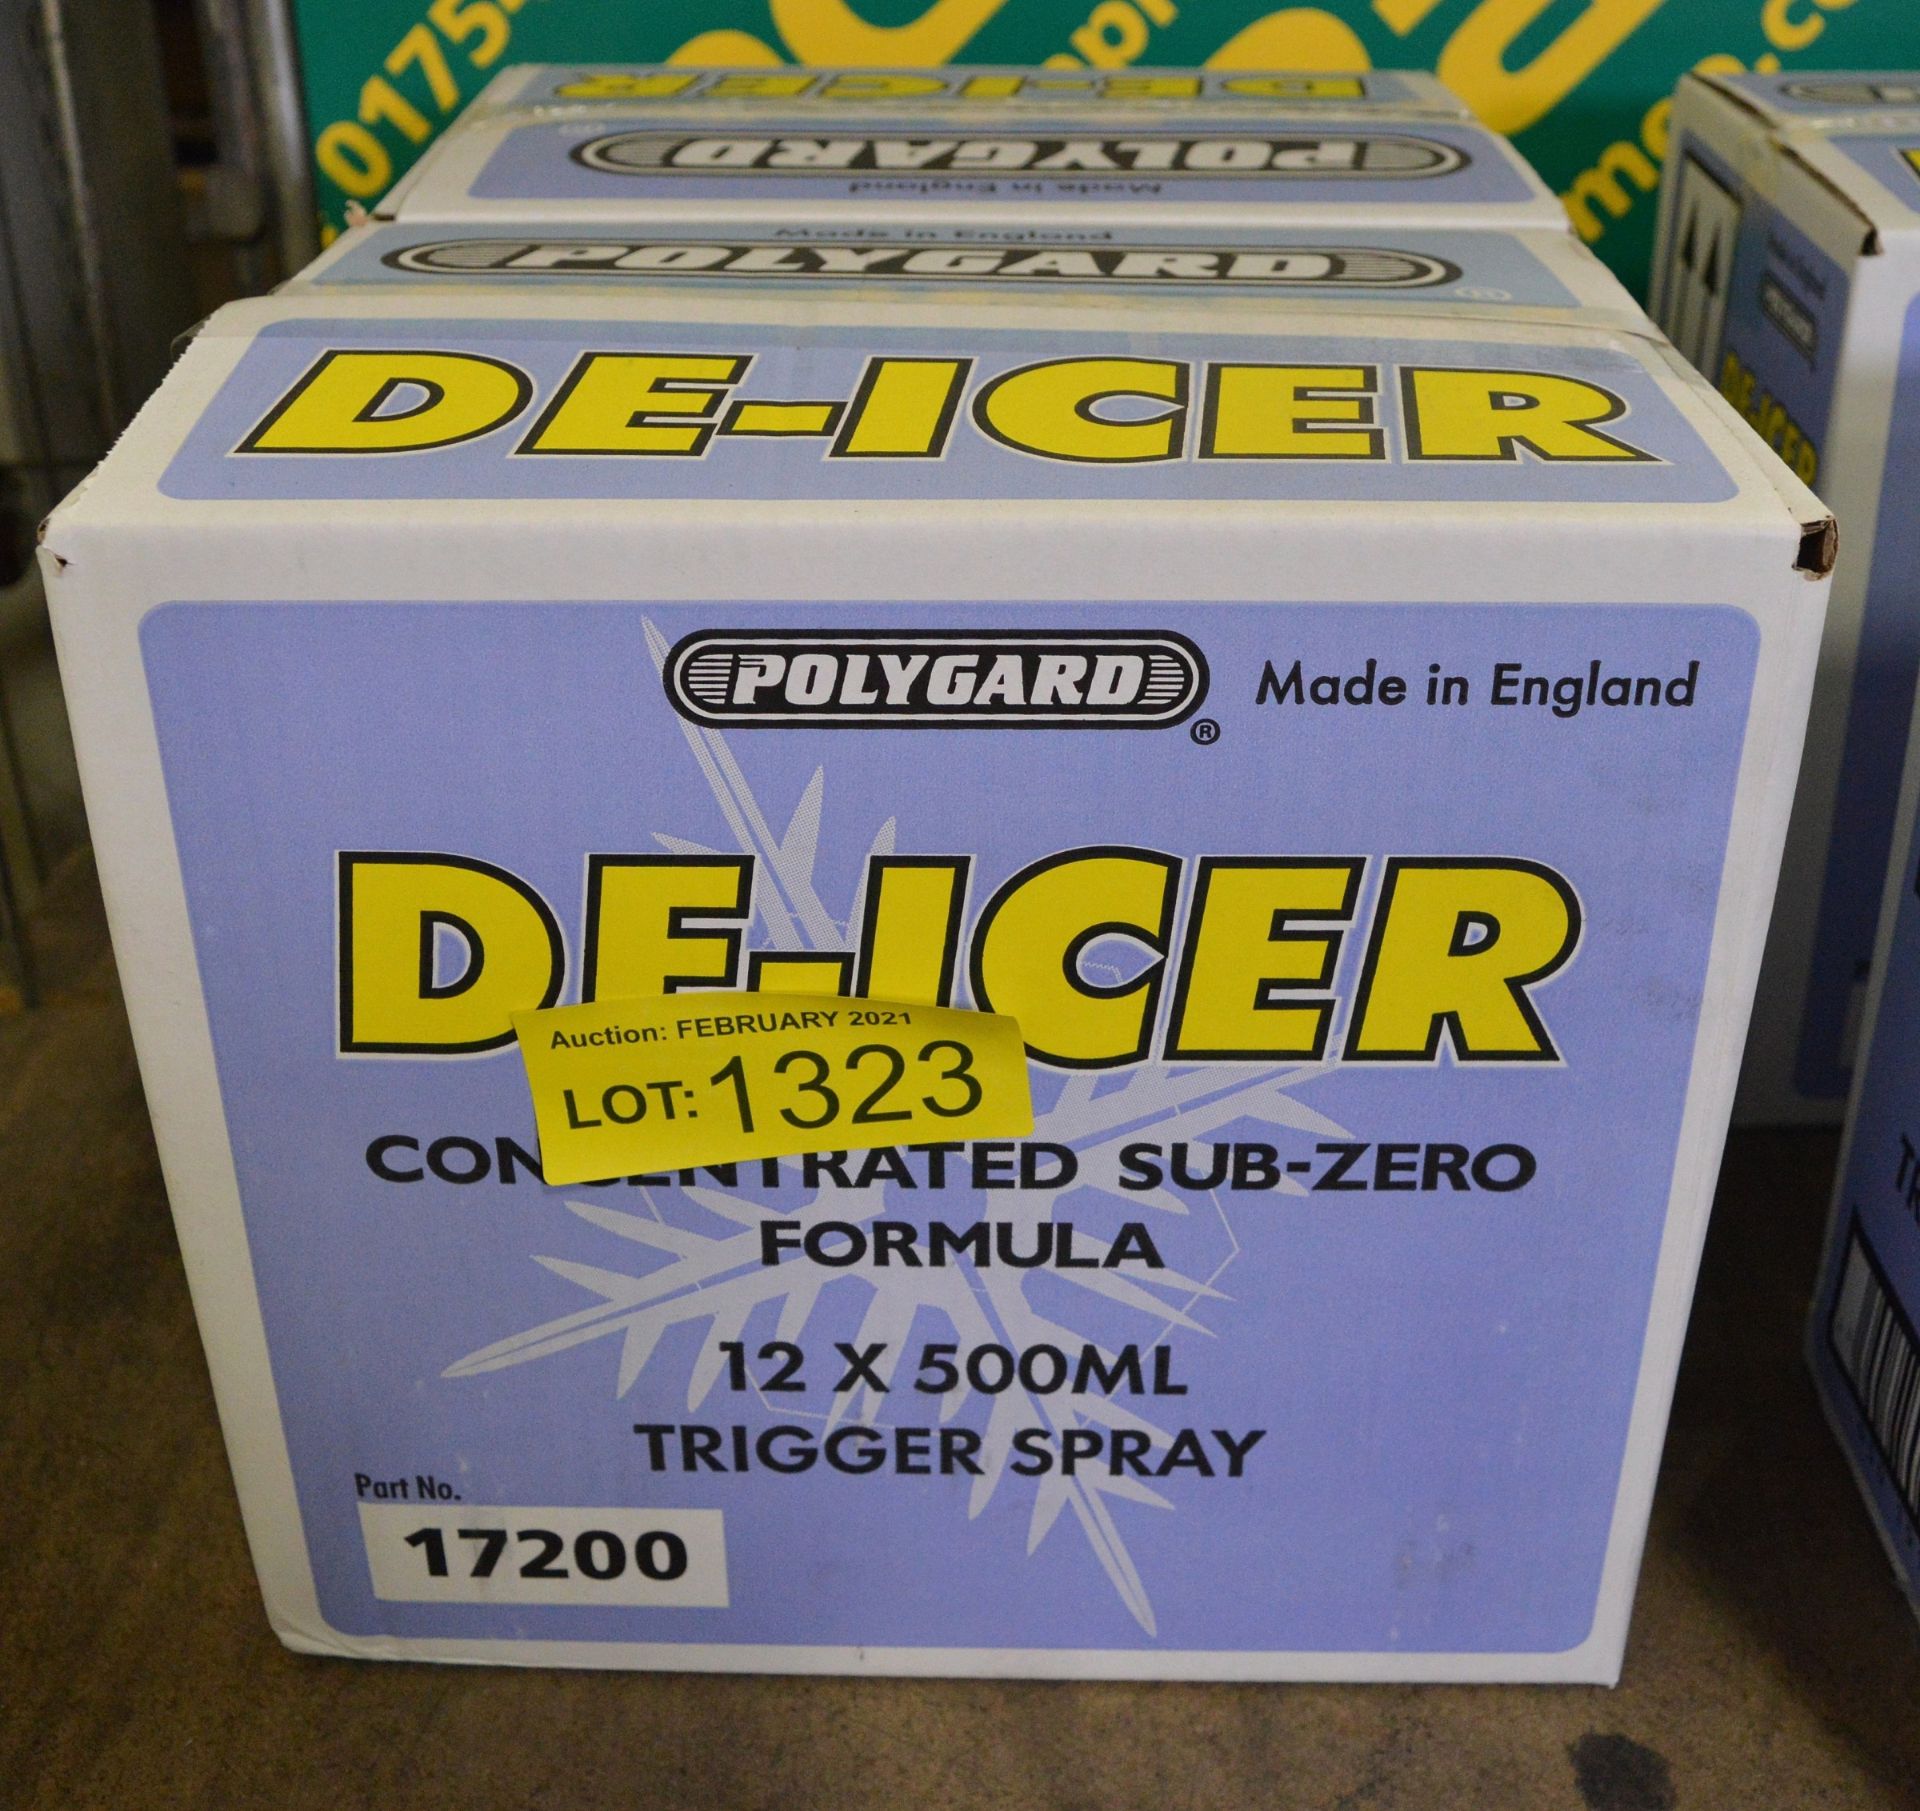 Polygard De-Icer 12x500ml trigger spray bottles - 2 boxes